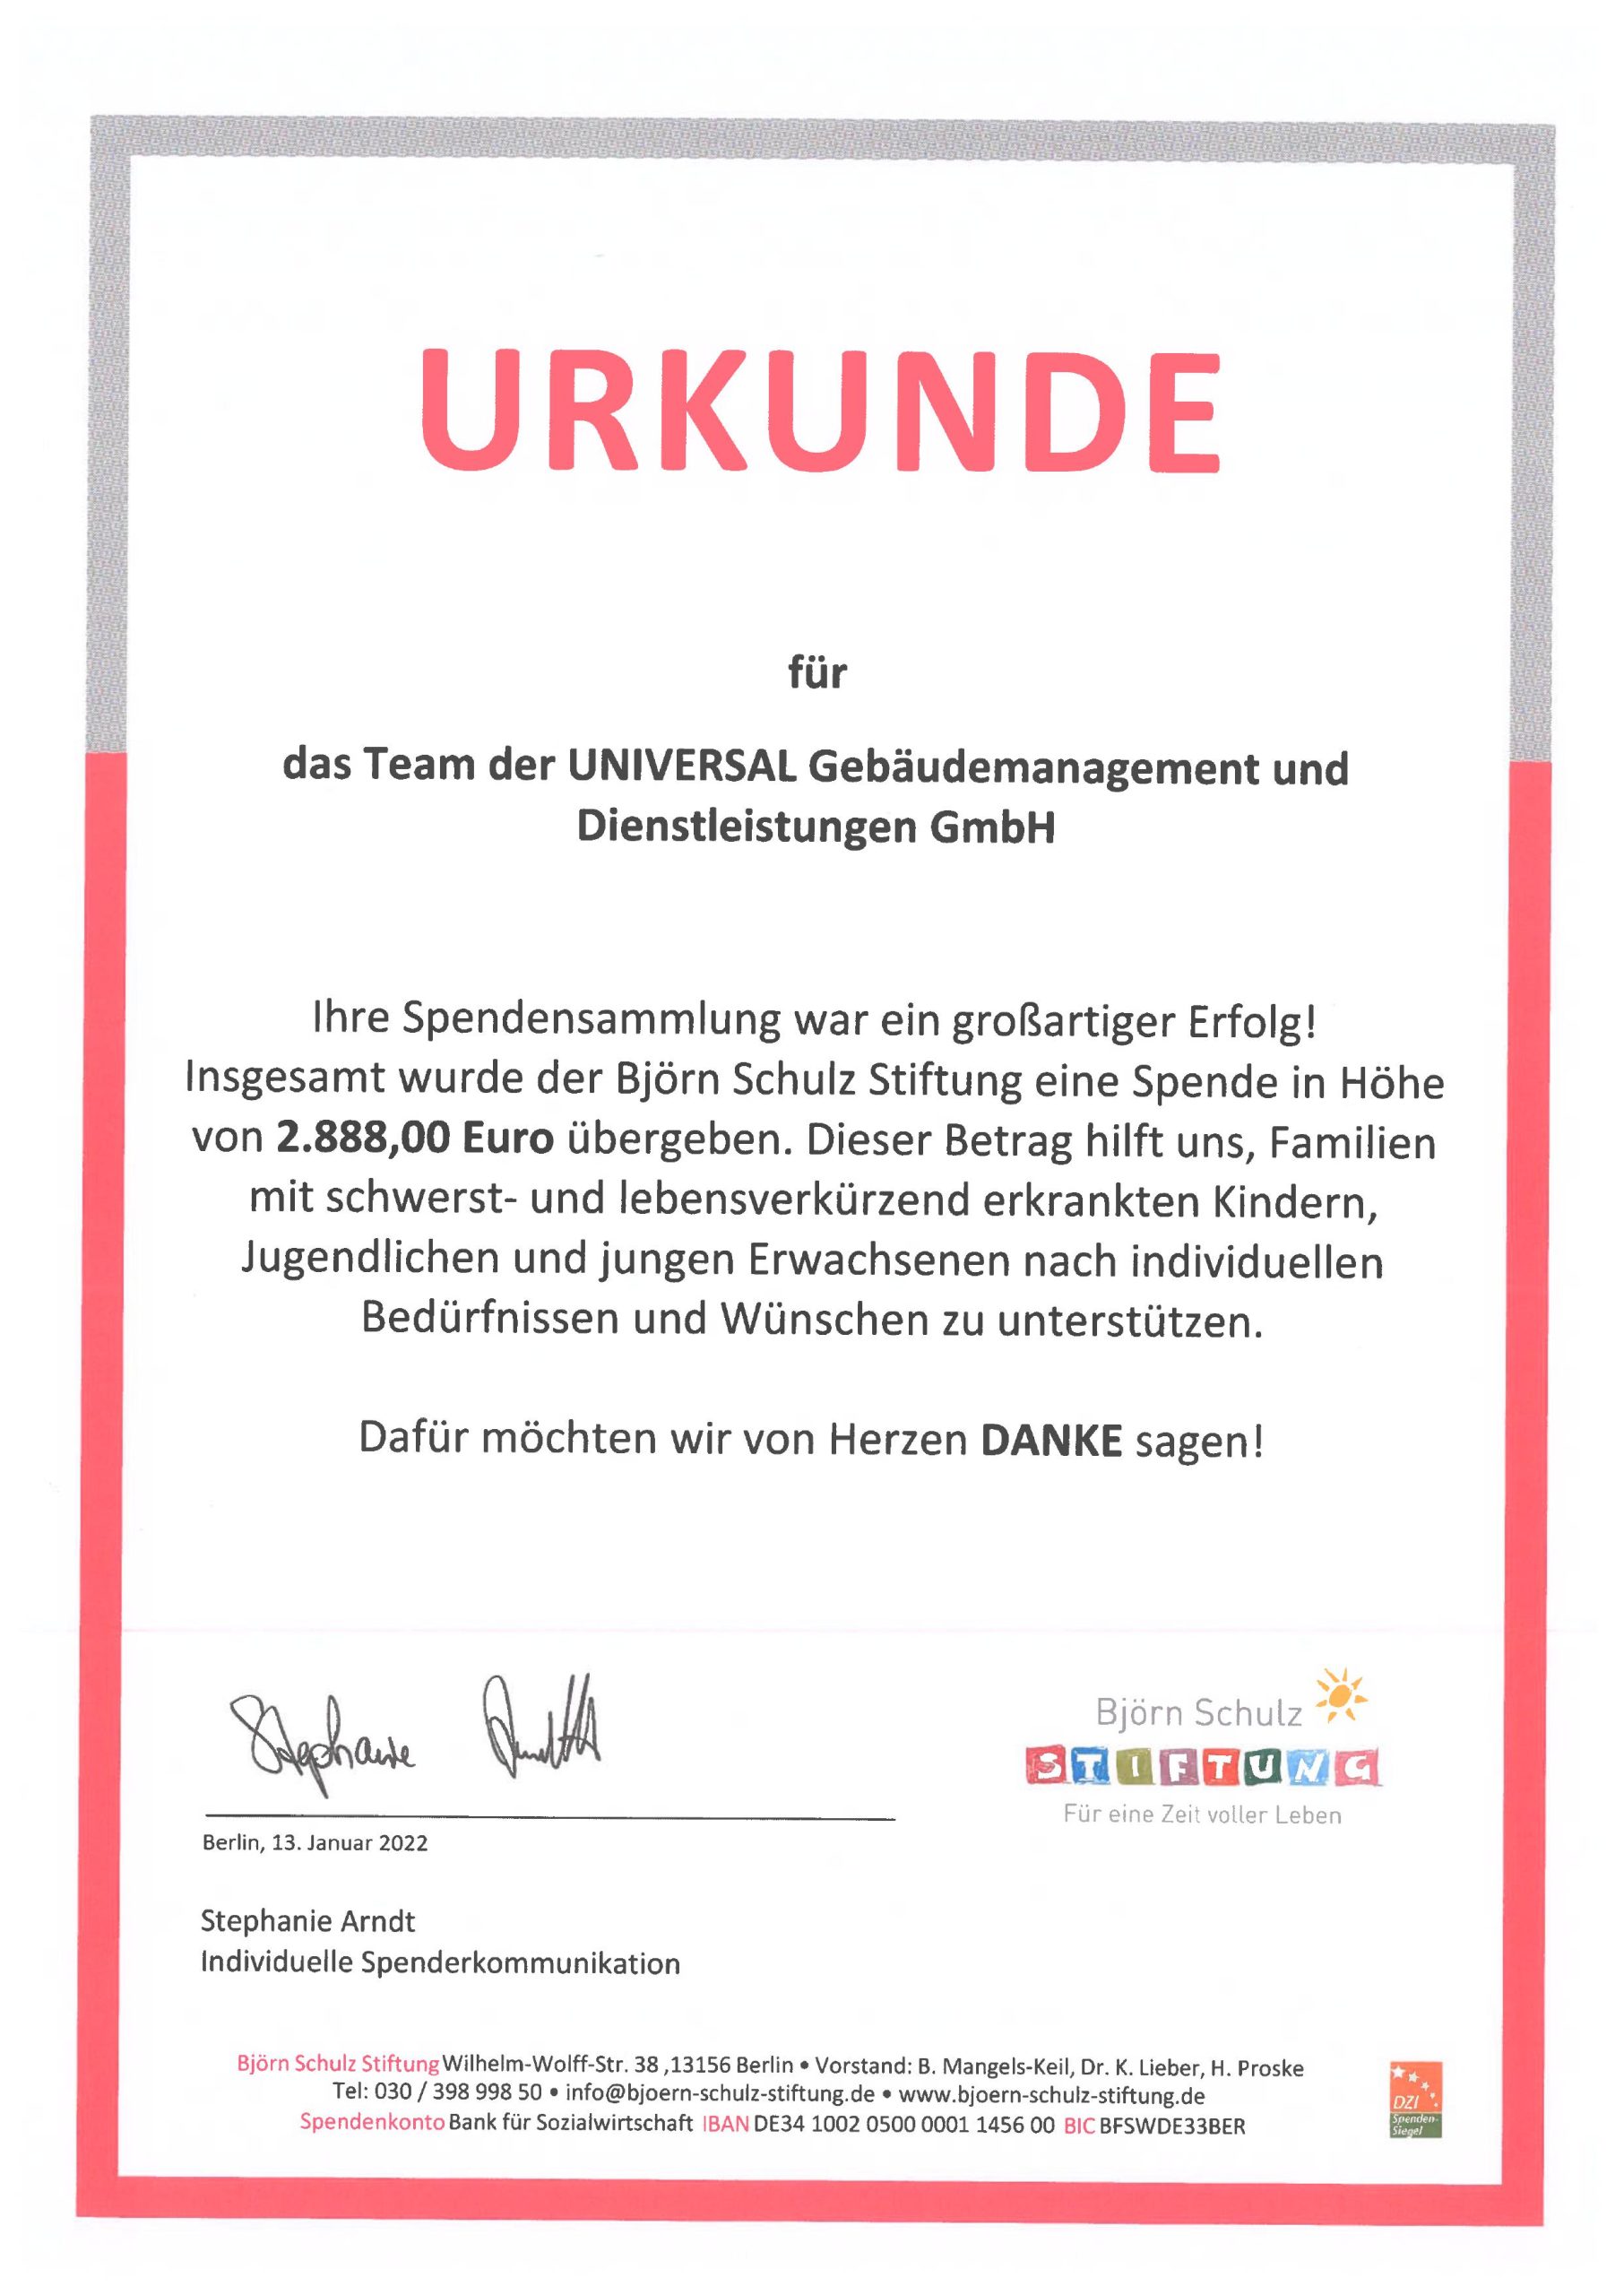 UNIVERSAL-Team unterstützt das Kinderhospiz Sonnenhof in Berlin